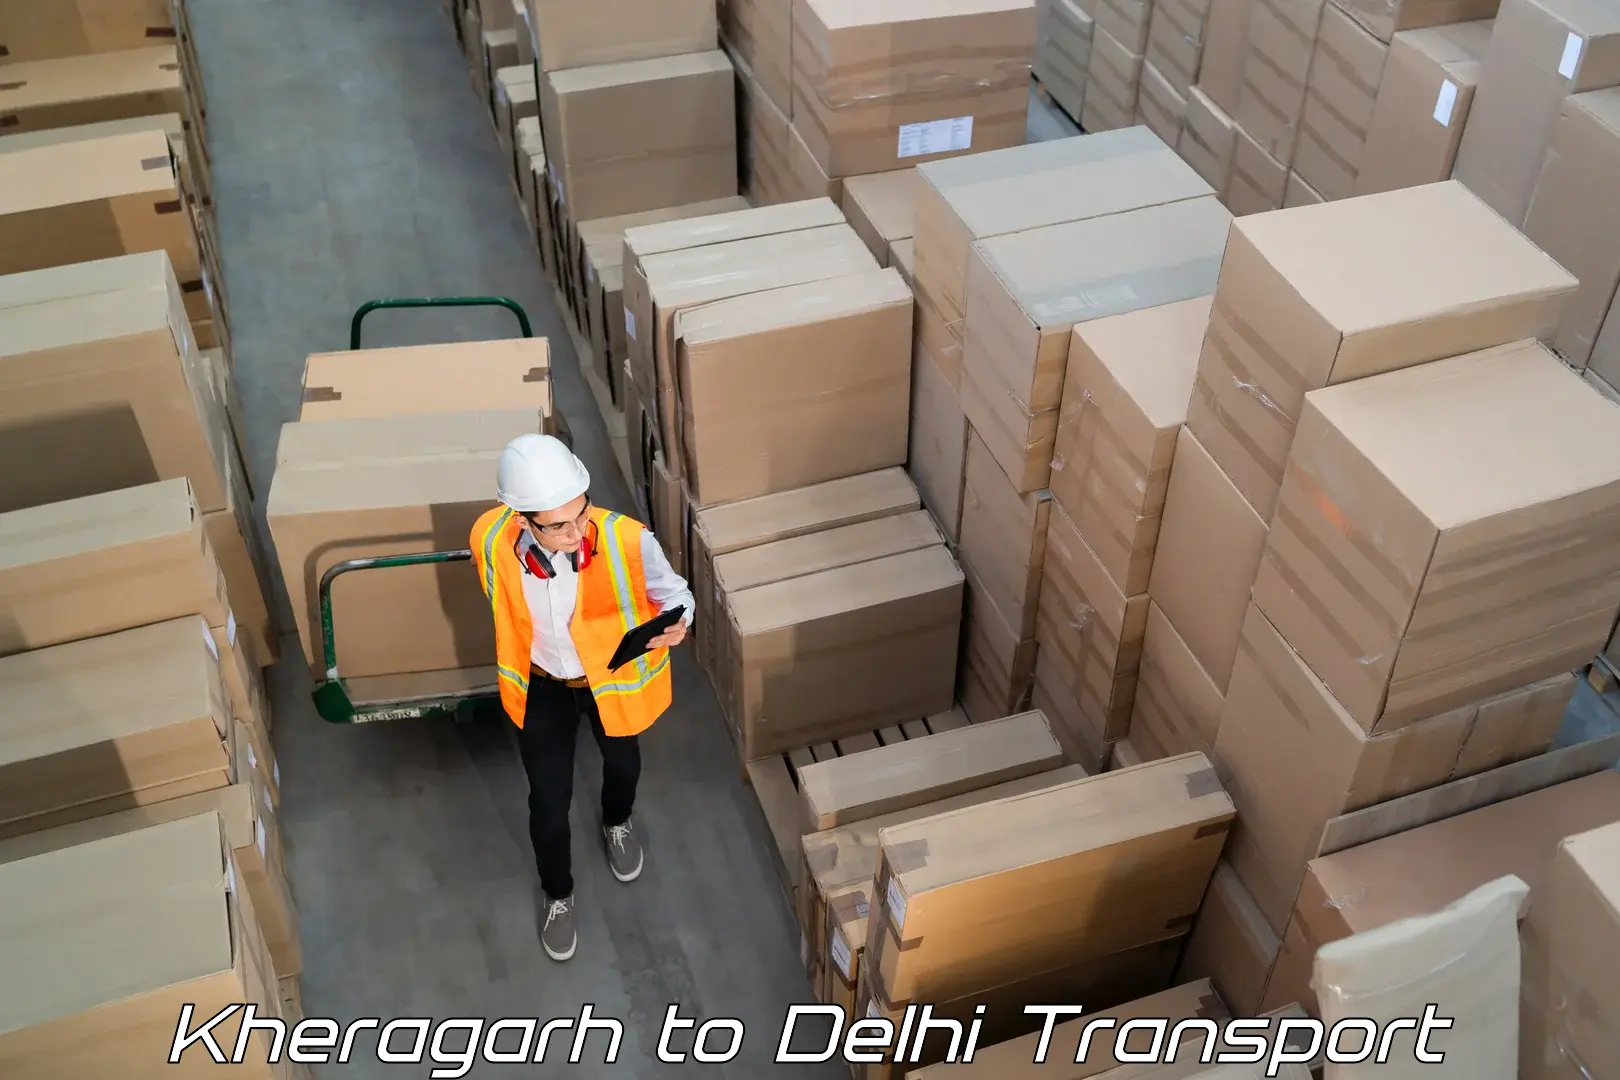 Furniture transport service Kheragarh to Naraina Industrial Estate